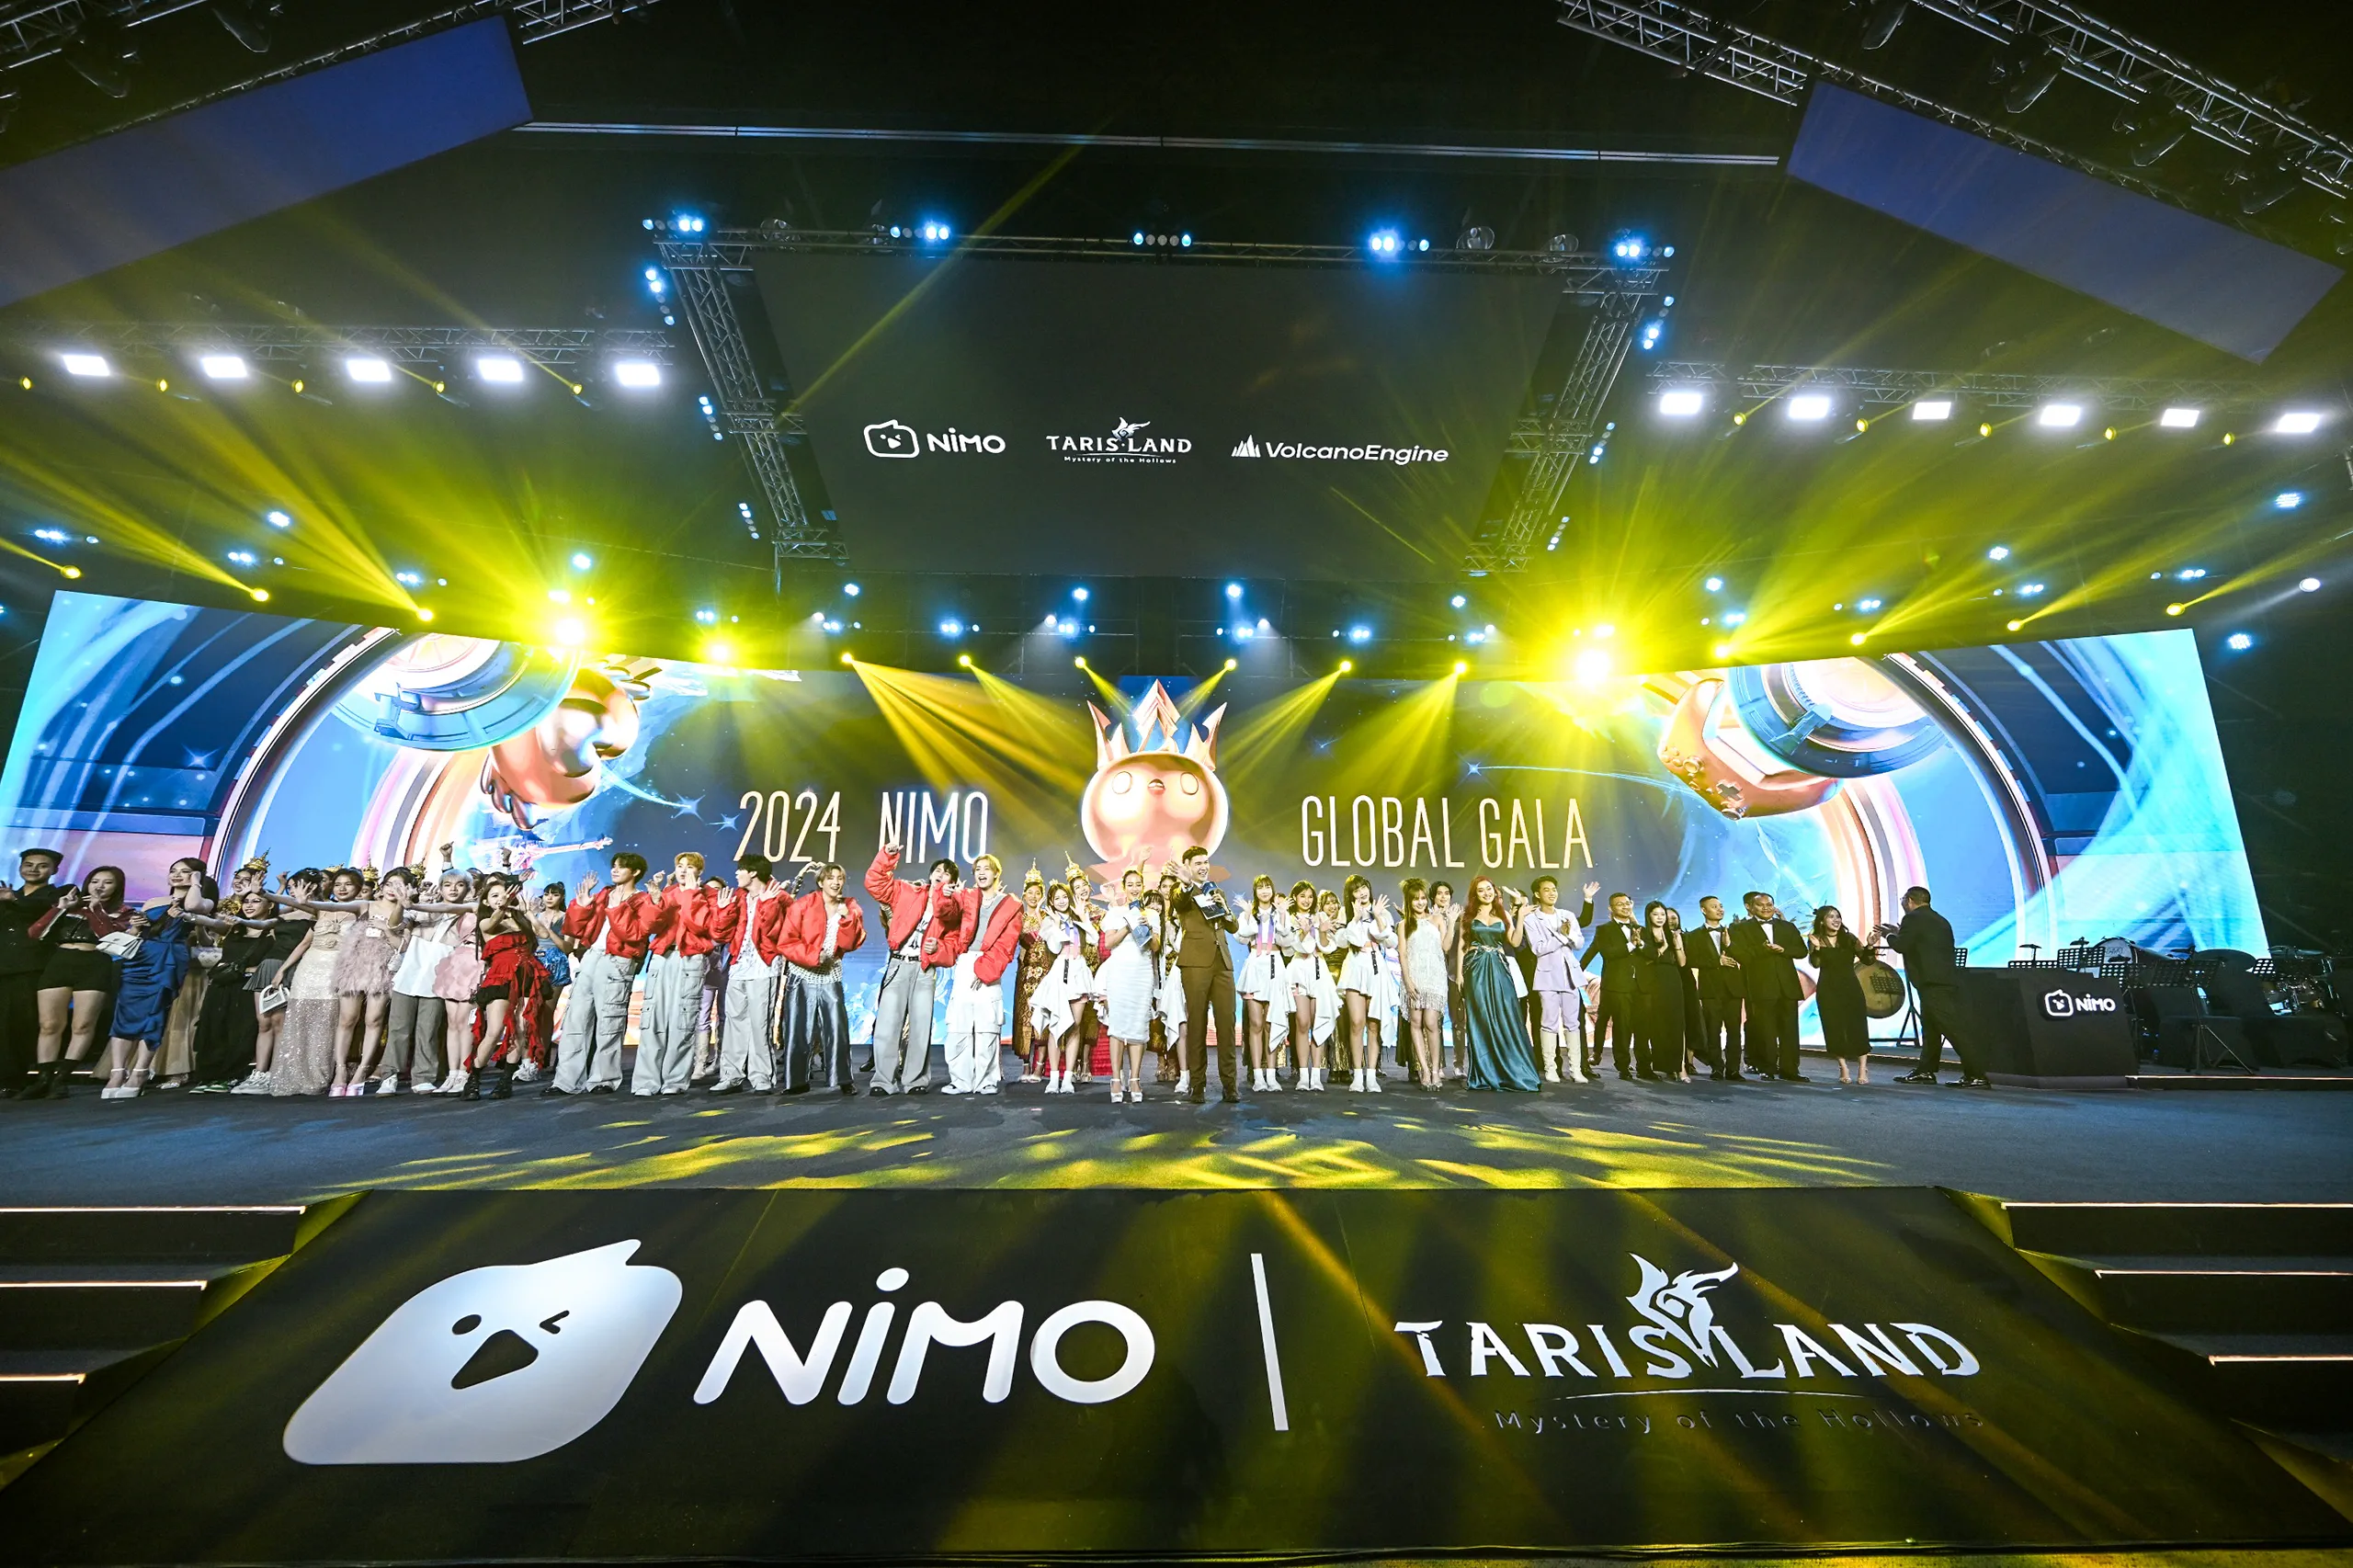 Nimo Global Gala 2024: Đêm hội vinh danh streamer xuất sắc và ra mắt game mới Tarisland